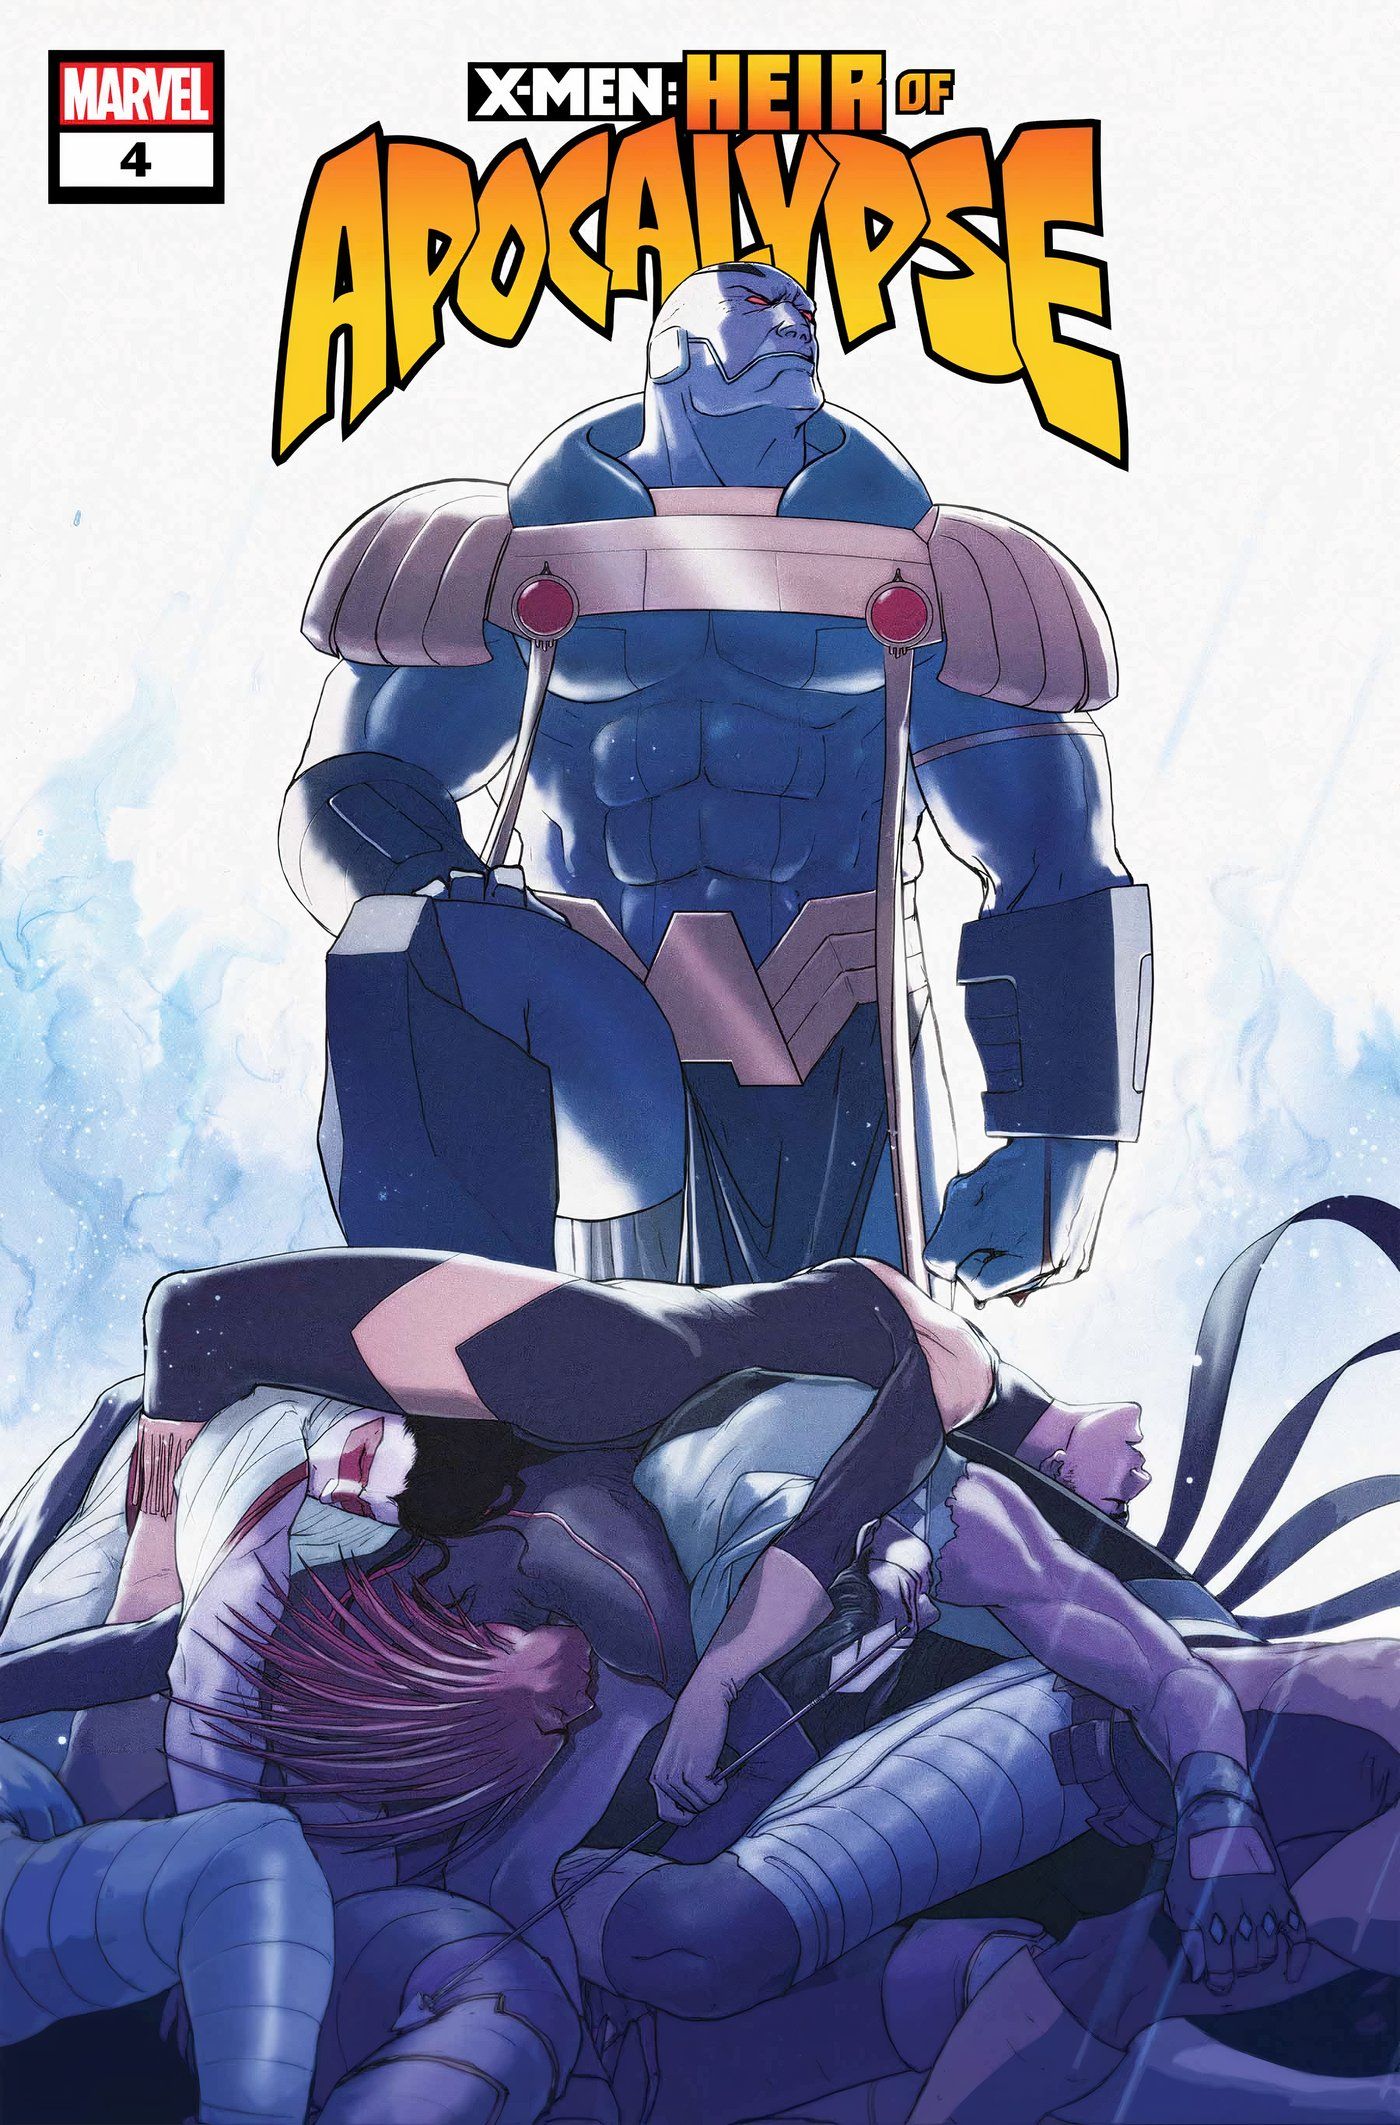 Capa principal de X-Men Heir of Apocalypse #4